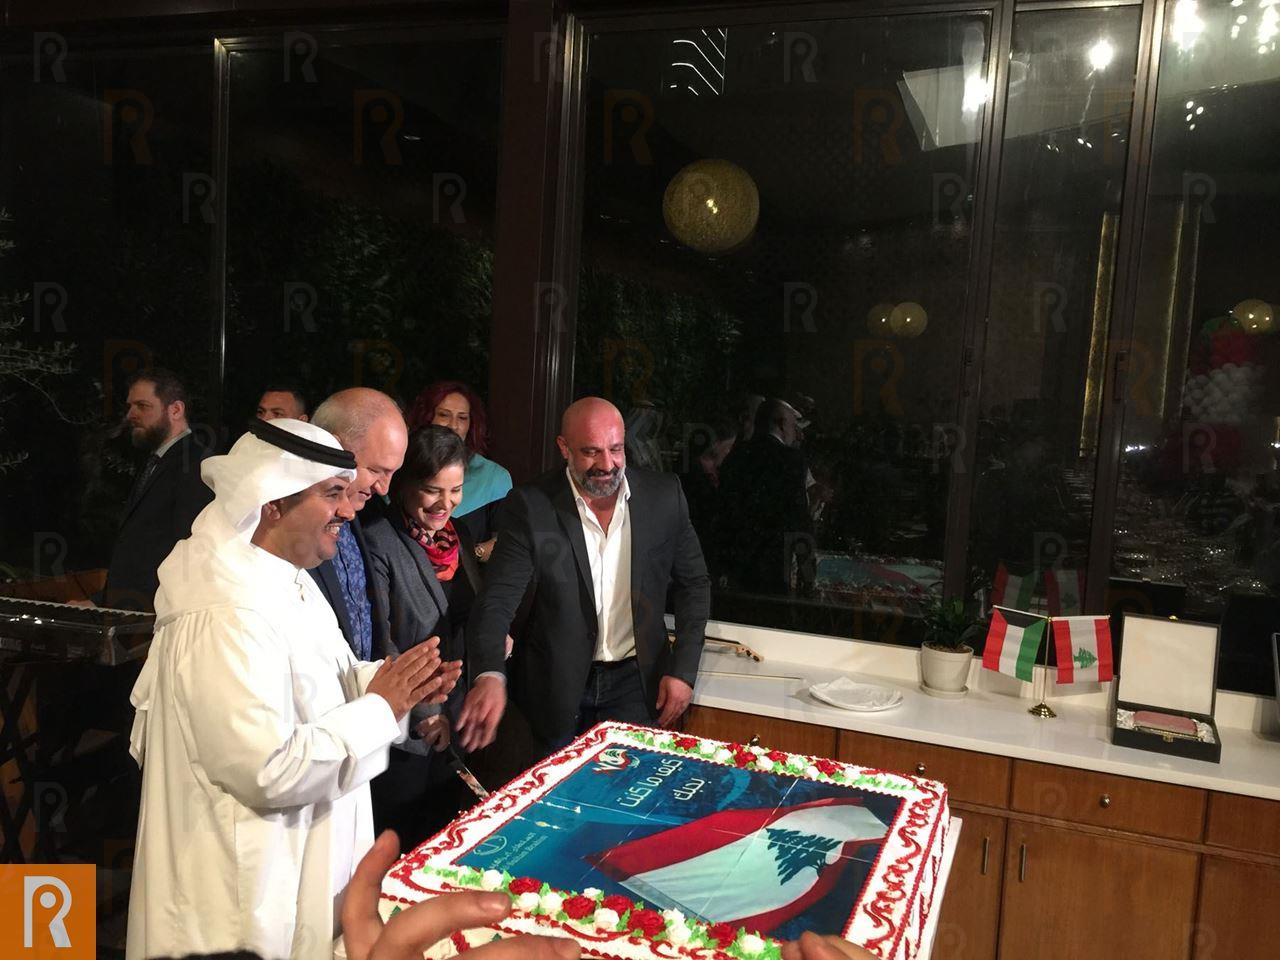 احتفال بمناسبة الذكرى الـ 75 لاستقلال لبنان في مطعم السلطان ابراهيم الكويت